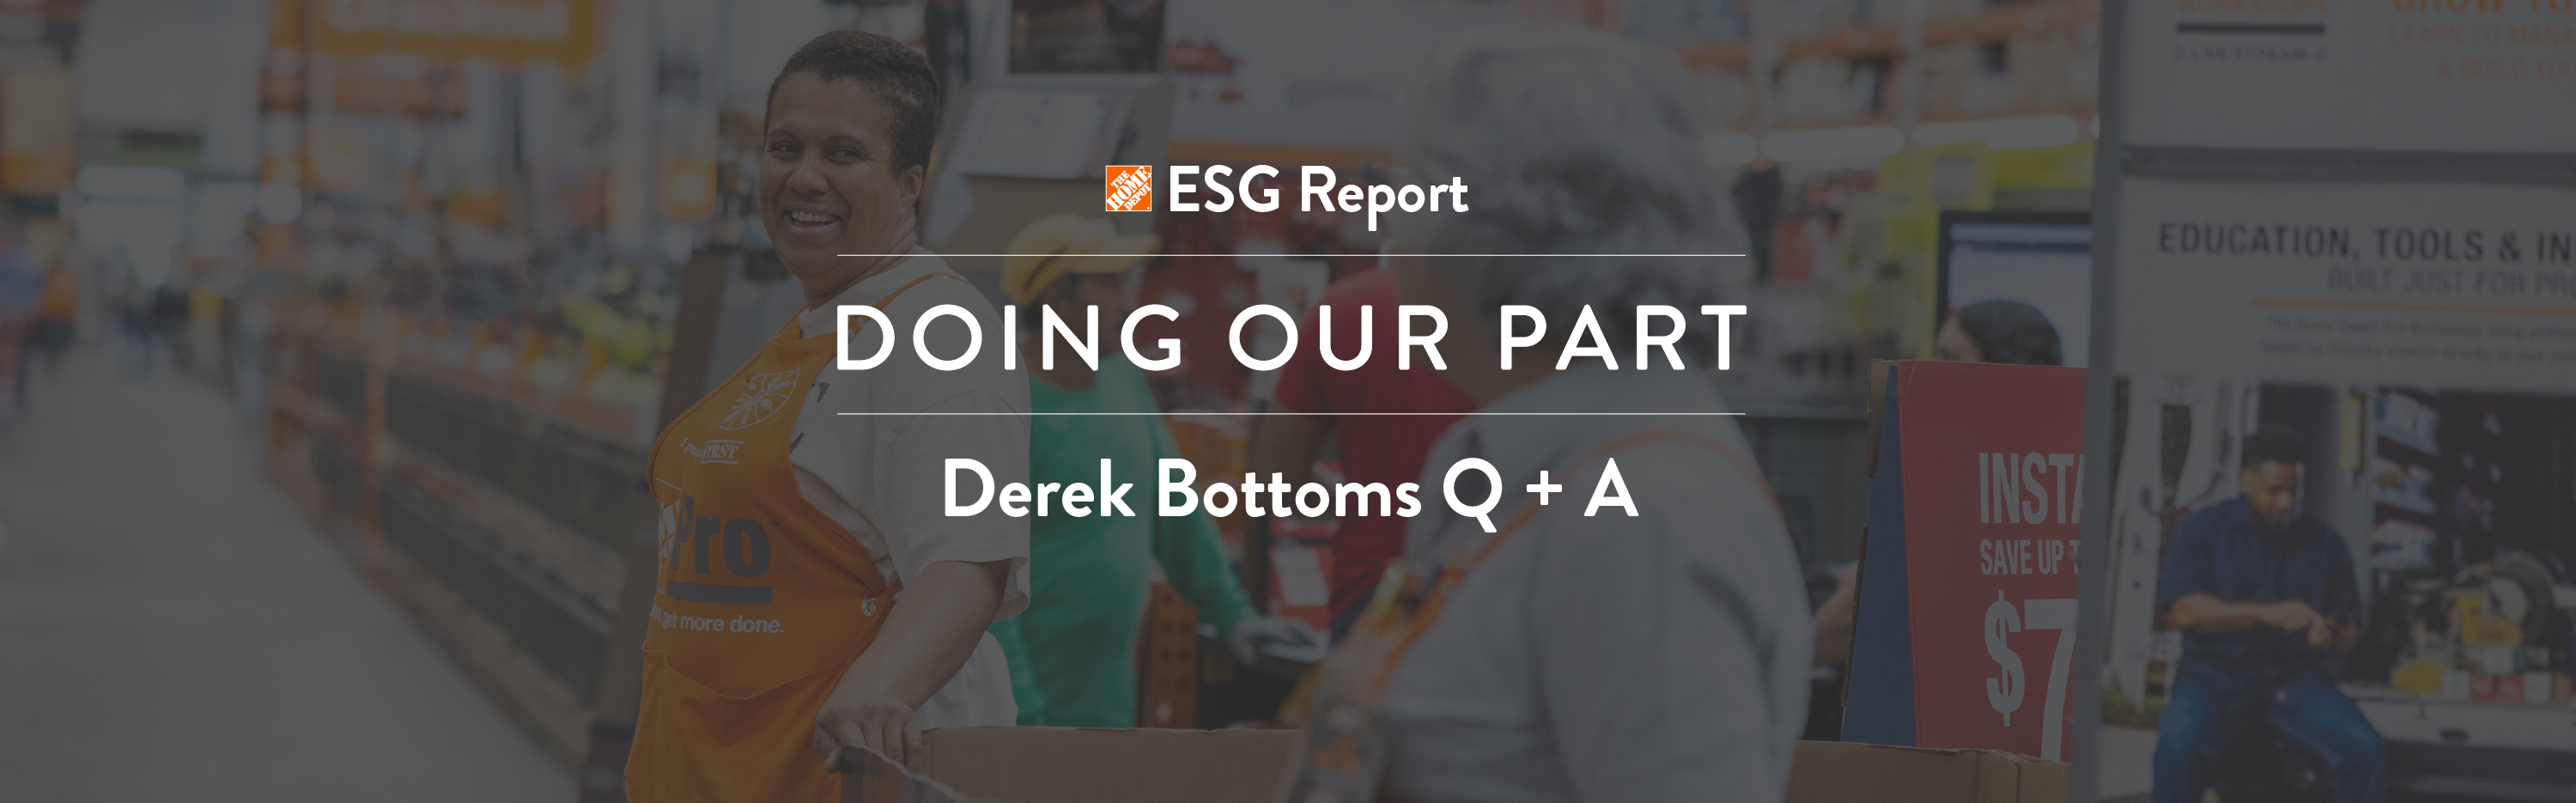 Derek Bottoms Q+A